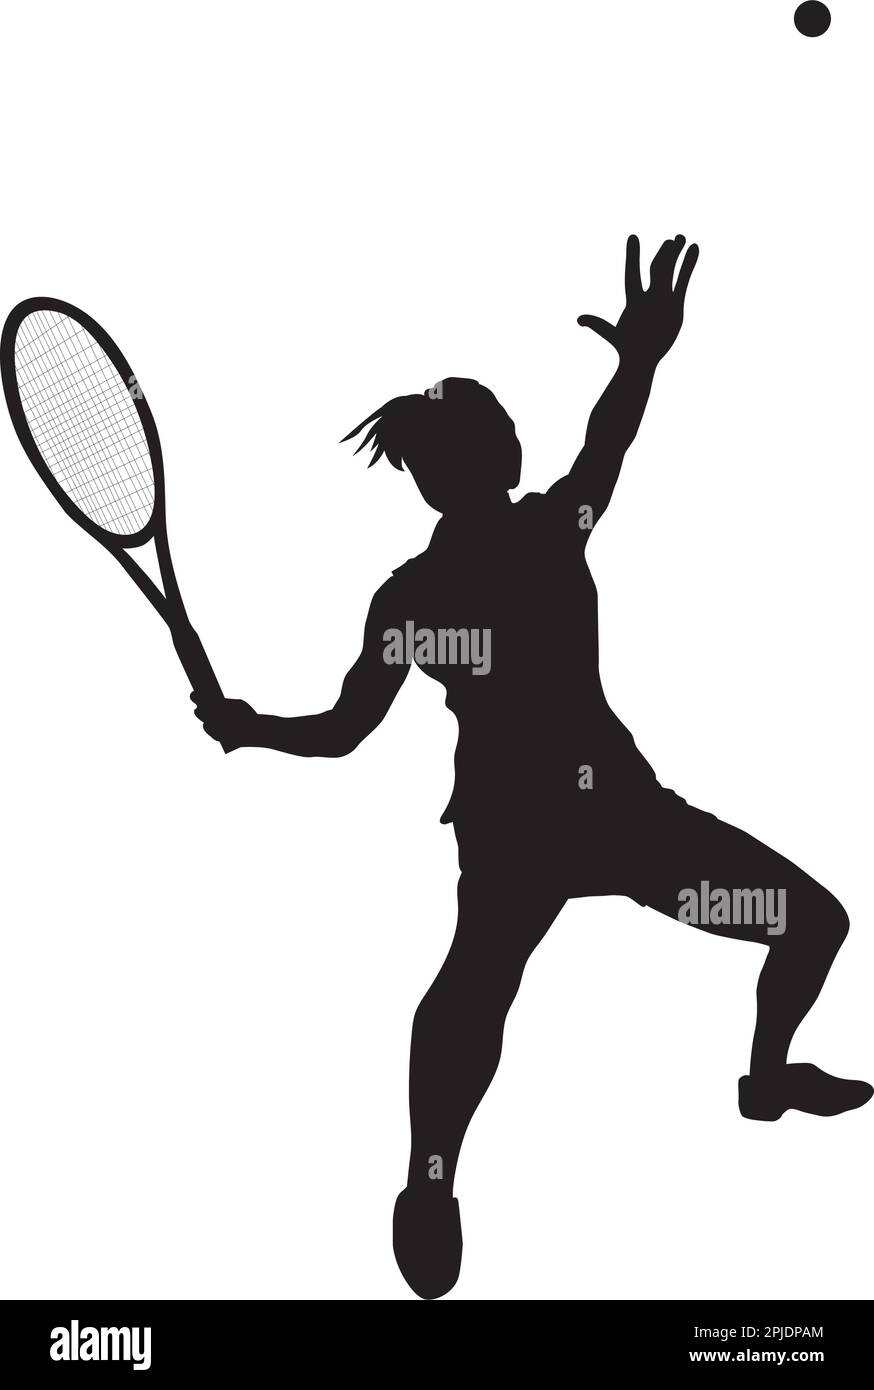 logo féminin jouant au tennis de sol sur le point de frapper le ballon  Image Vectorielle Stock - Alamy